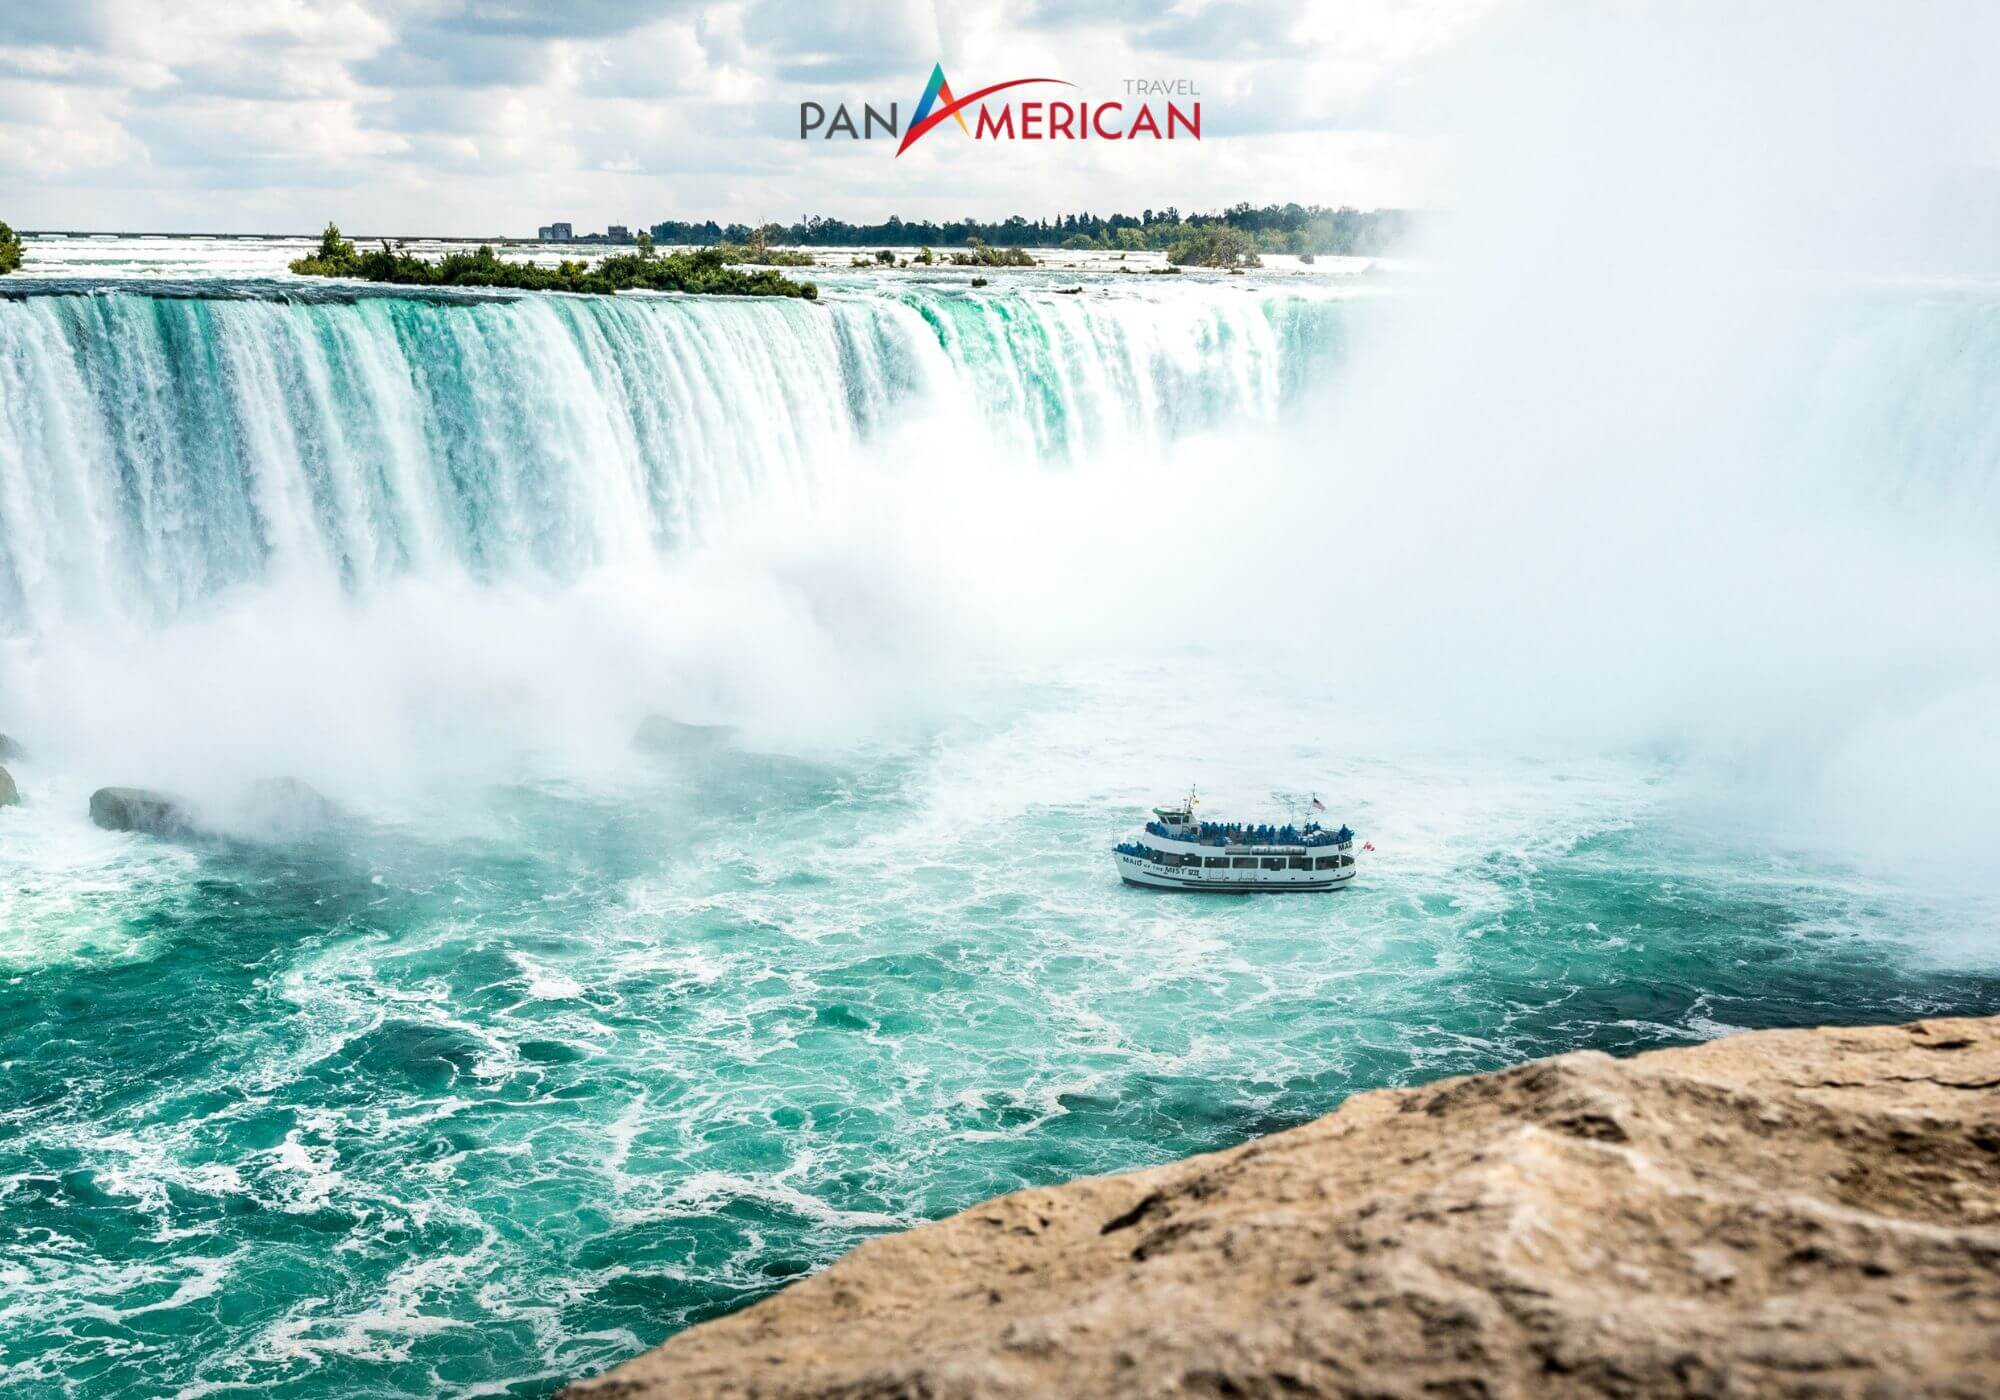 Thác nước Niagara, địa điểm thu hút đông đảo khách du lịch, đem về nguồn lợi nhuận hàng tỷ đô la Mỹ